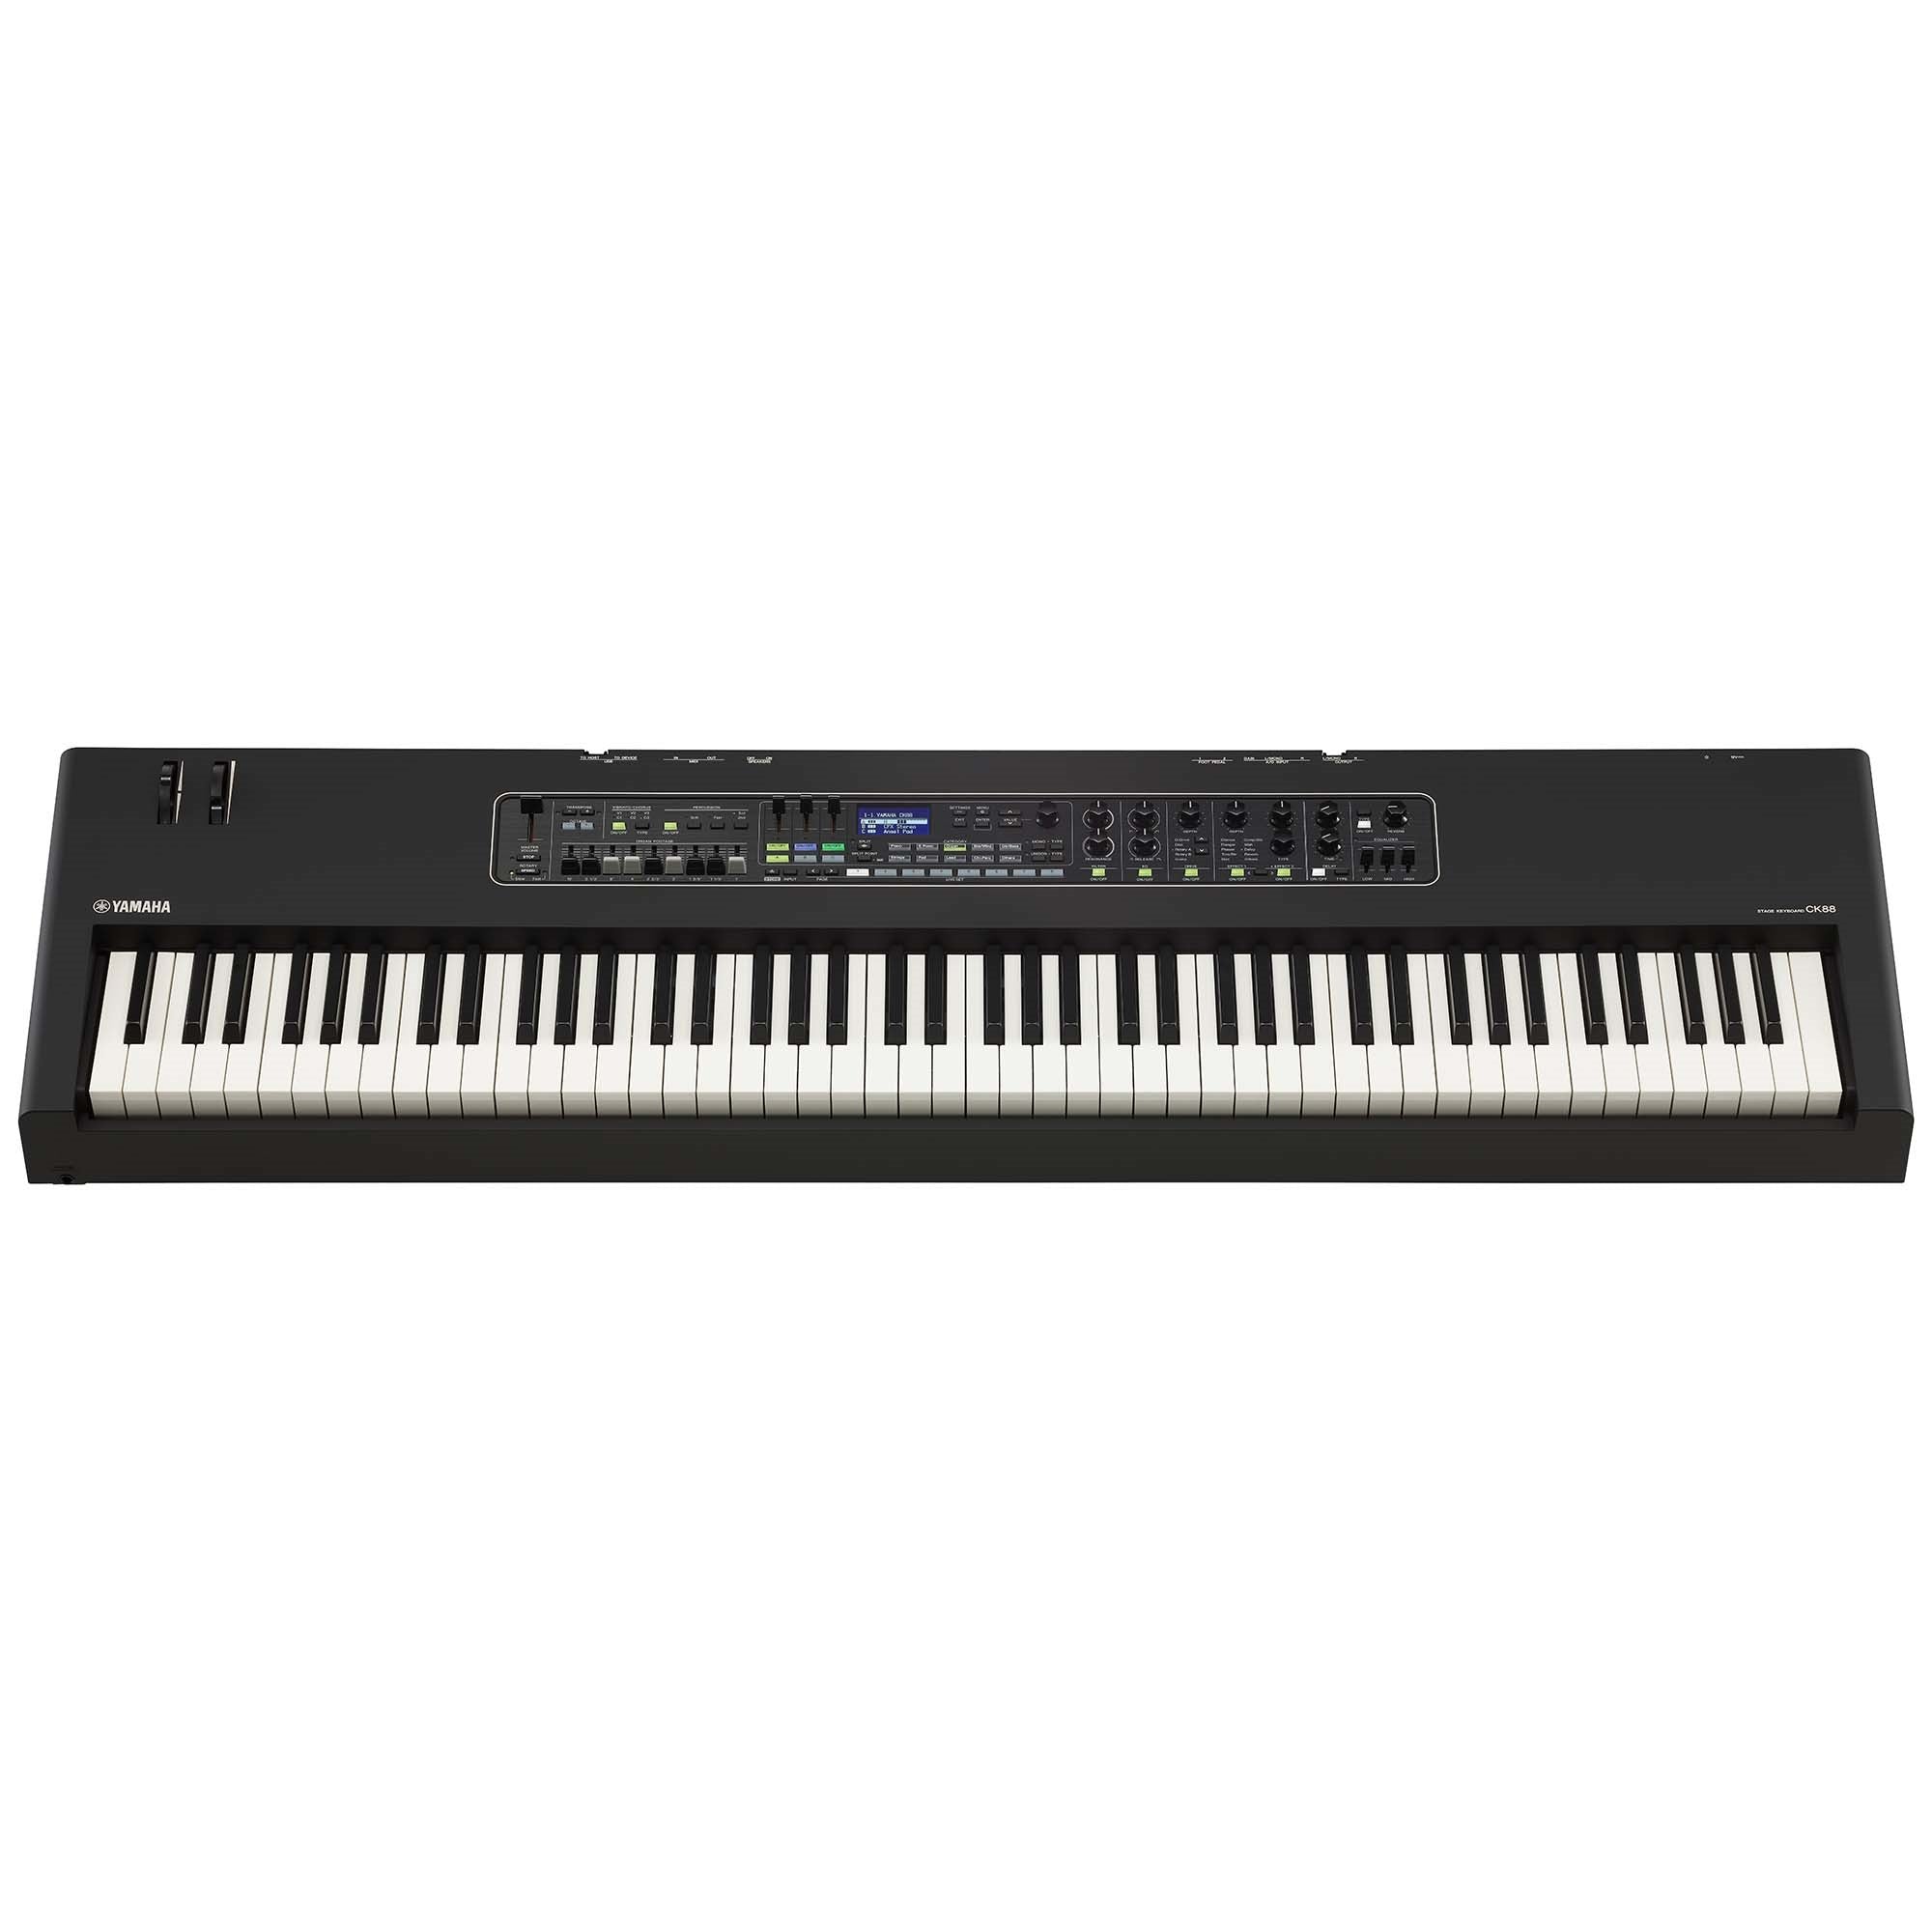 Yamaha CK88 - CK Series Stage Keyboard